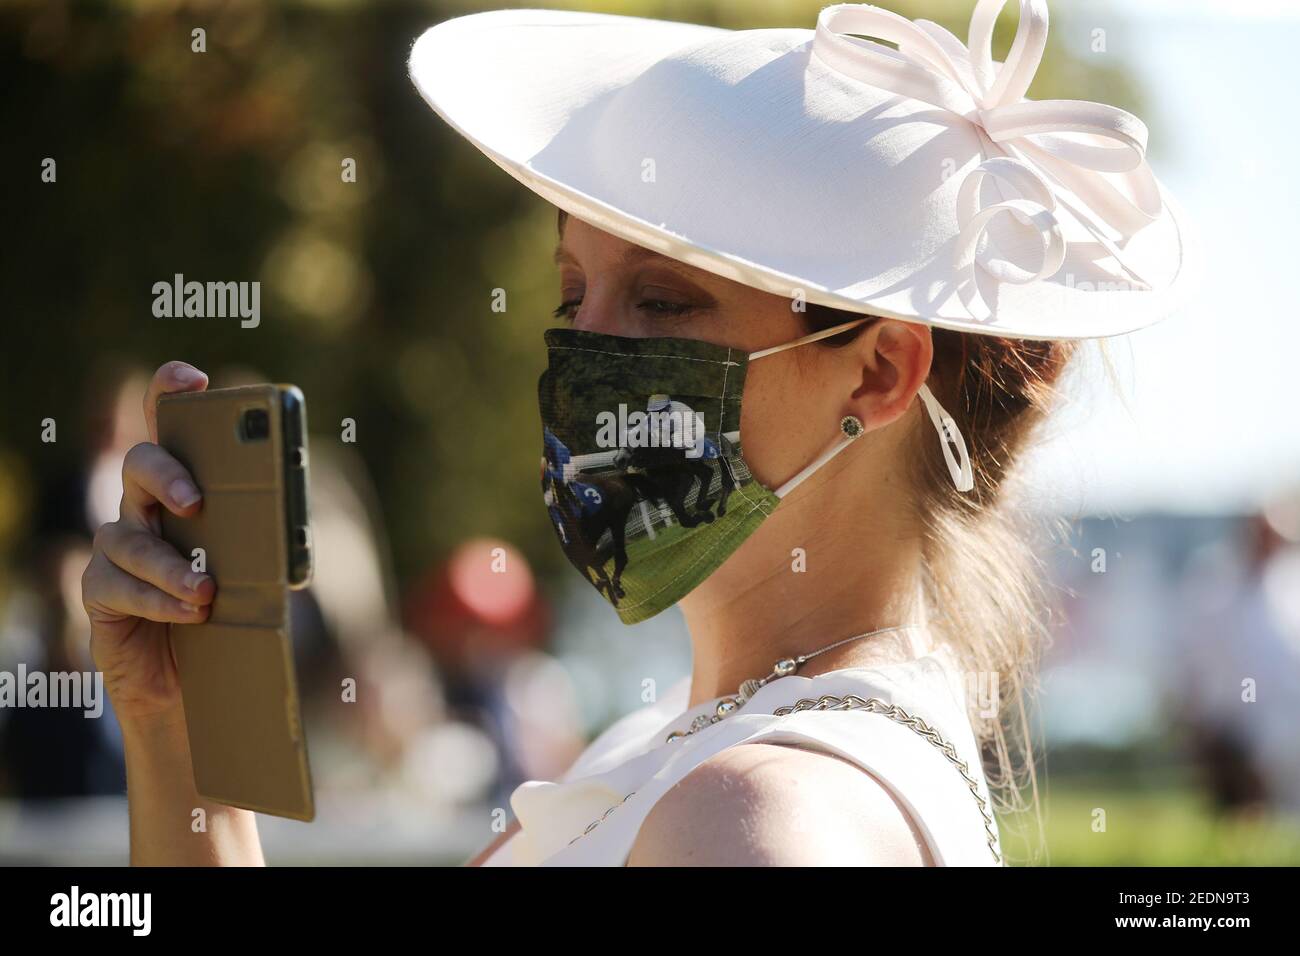 13.09.2020, Iffezheim, Bade-Wurtemberg, Allemagne - mode: Femme élégamment habillée dans un chapeau porte un protecteur de bouche-nez de bricolage et prend des photos avec Banque D'Images